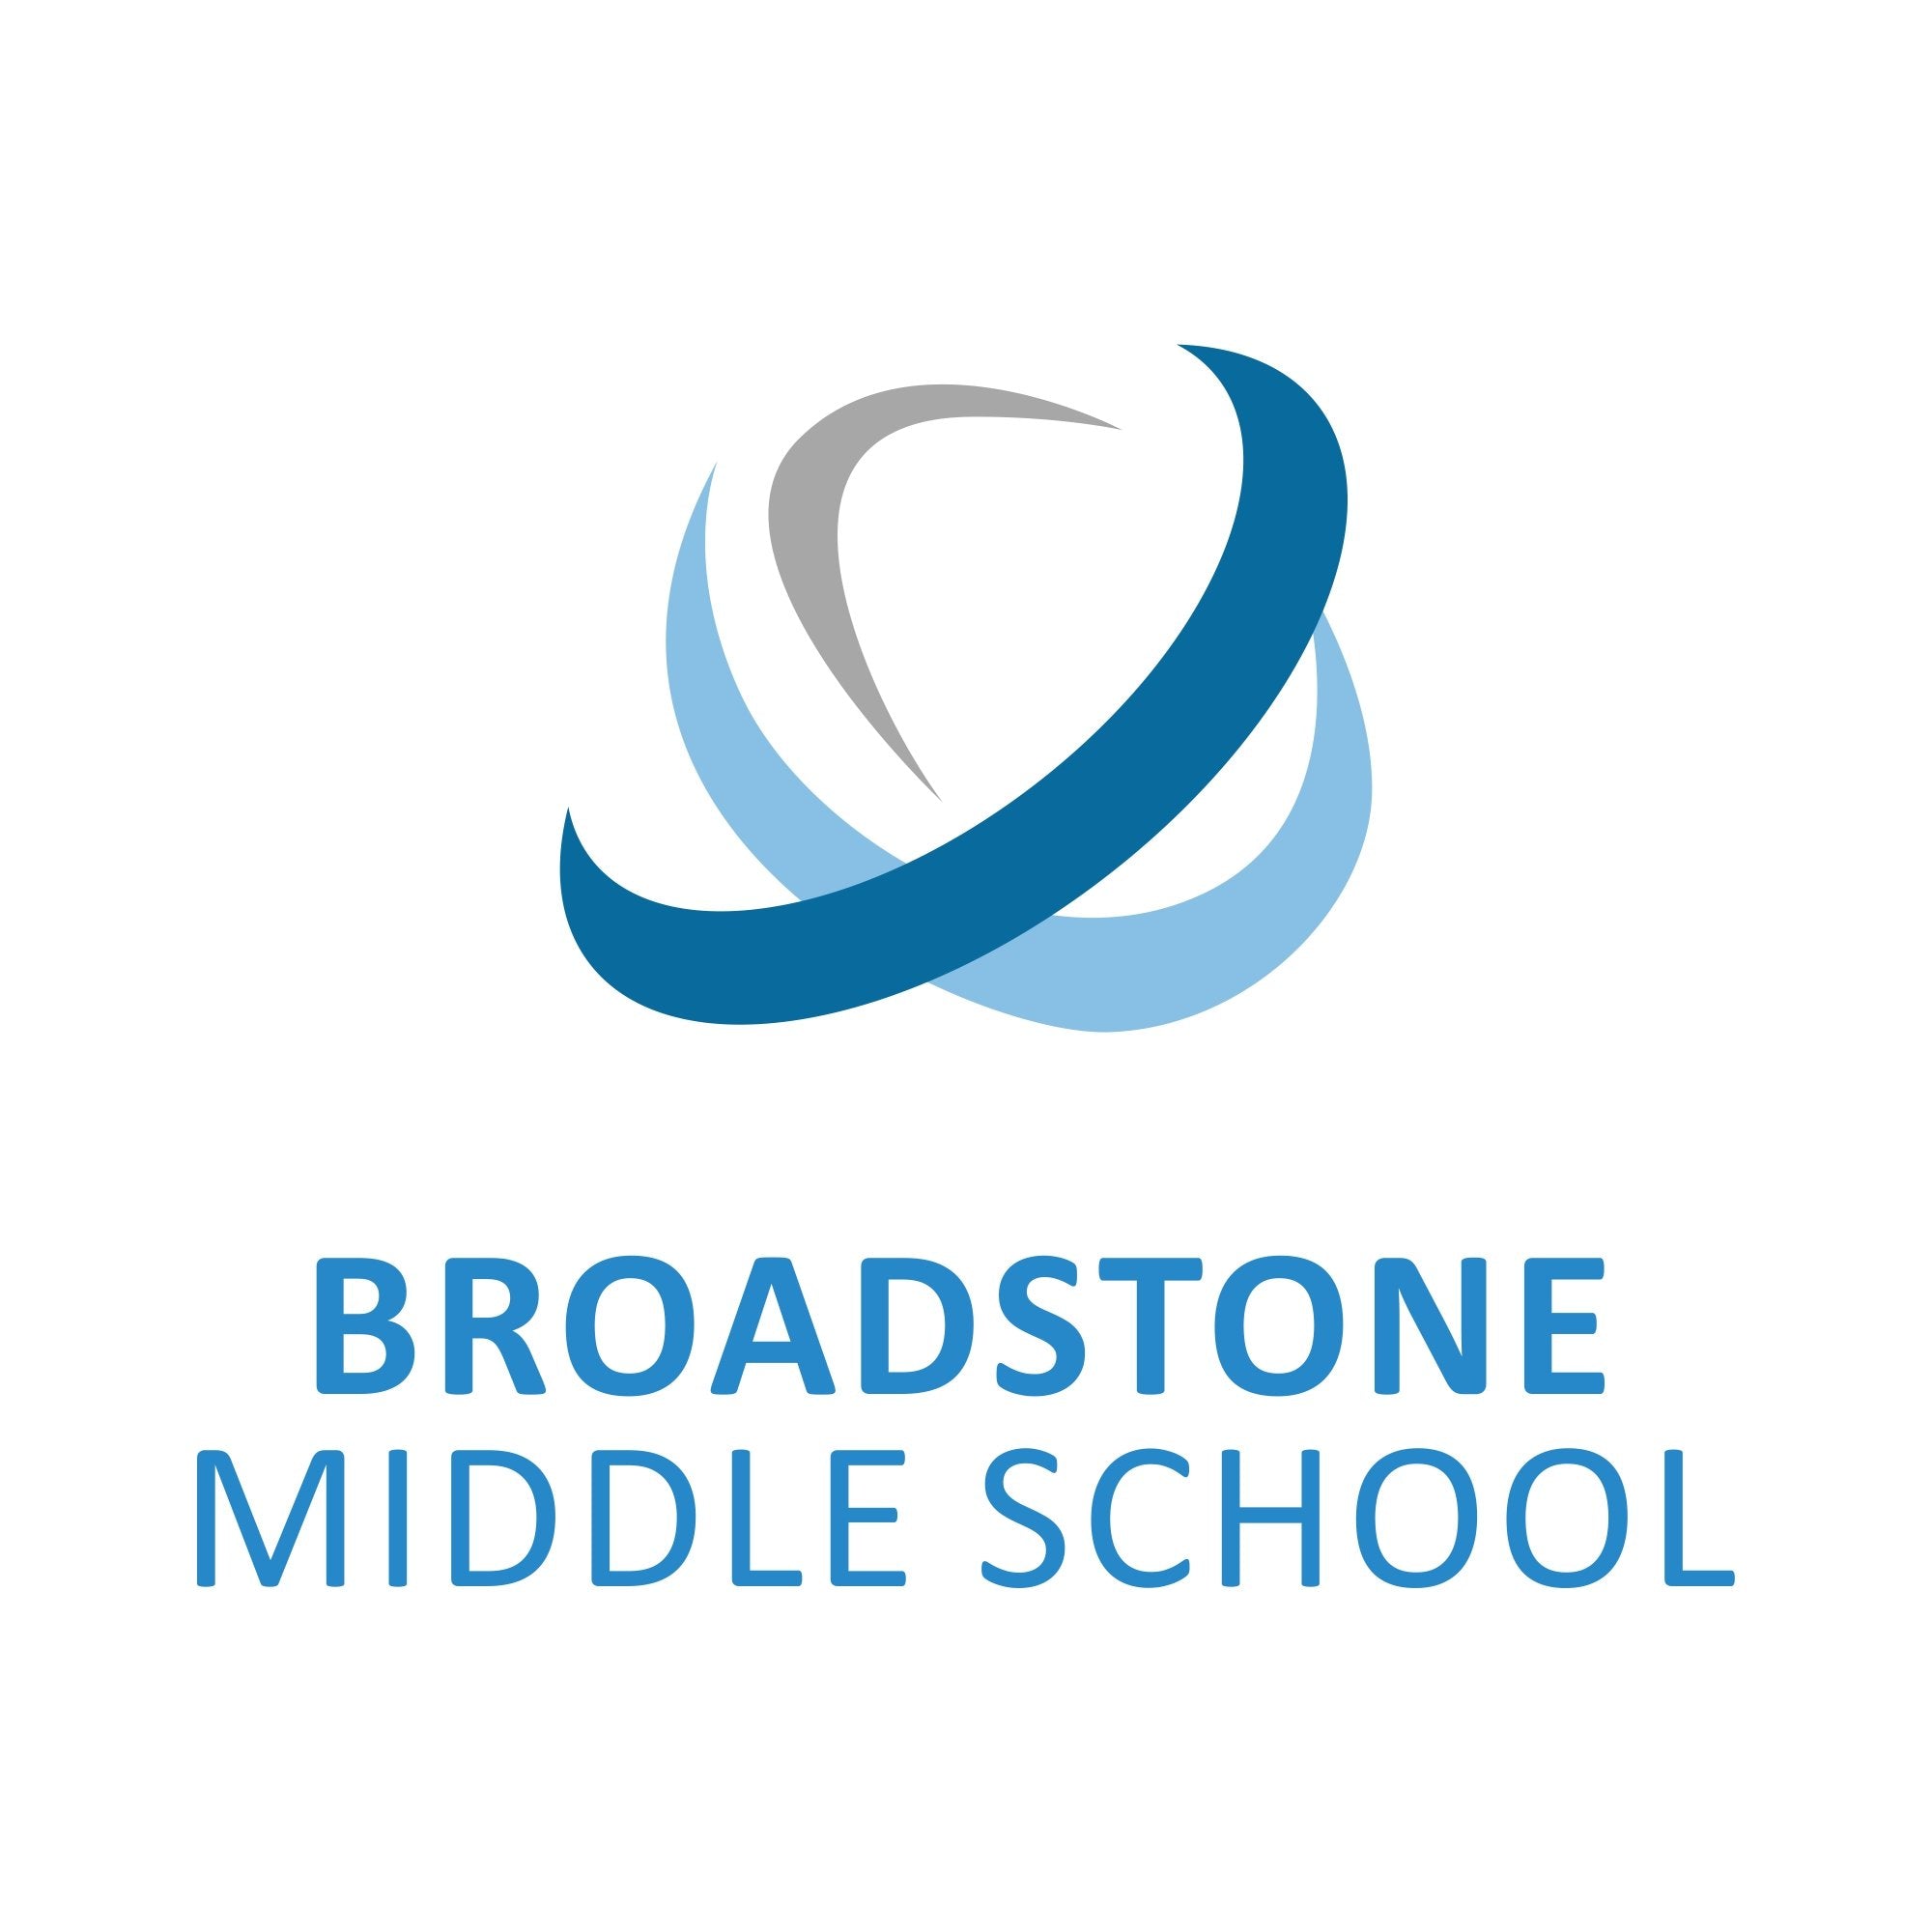 Broadstone Middle School